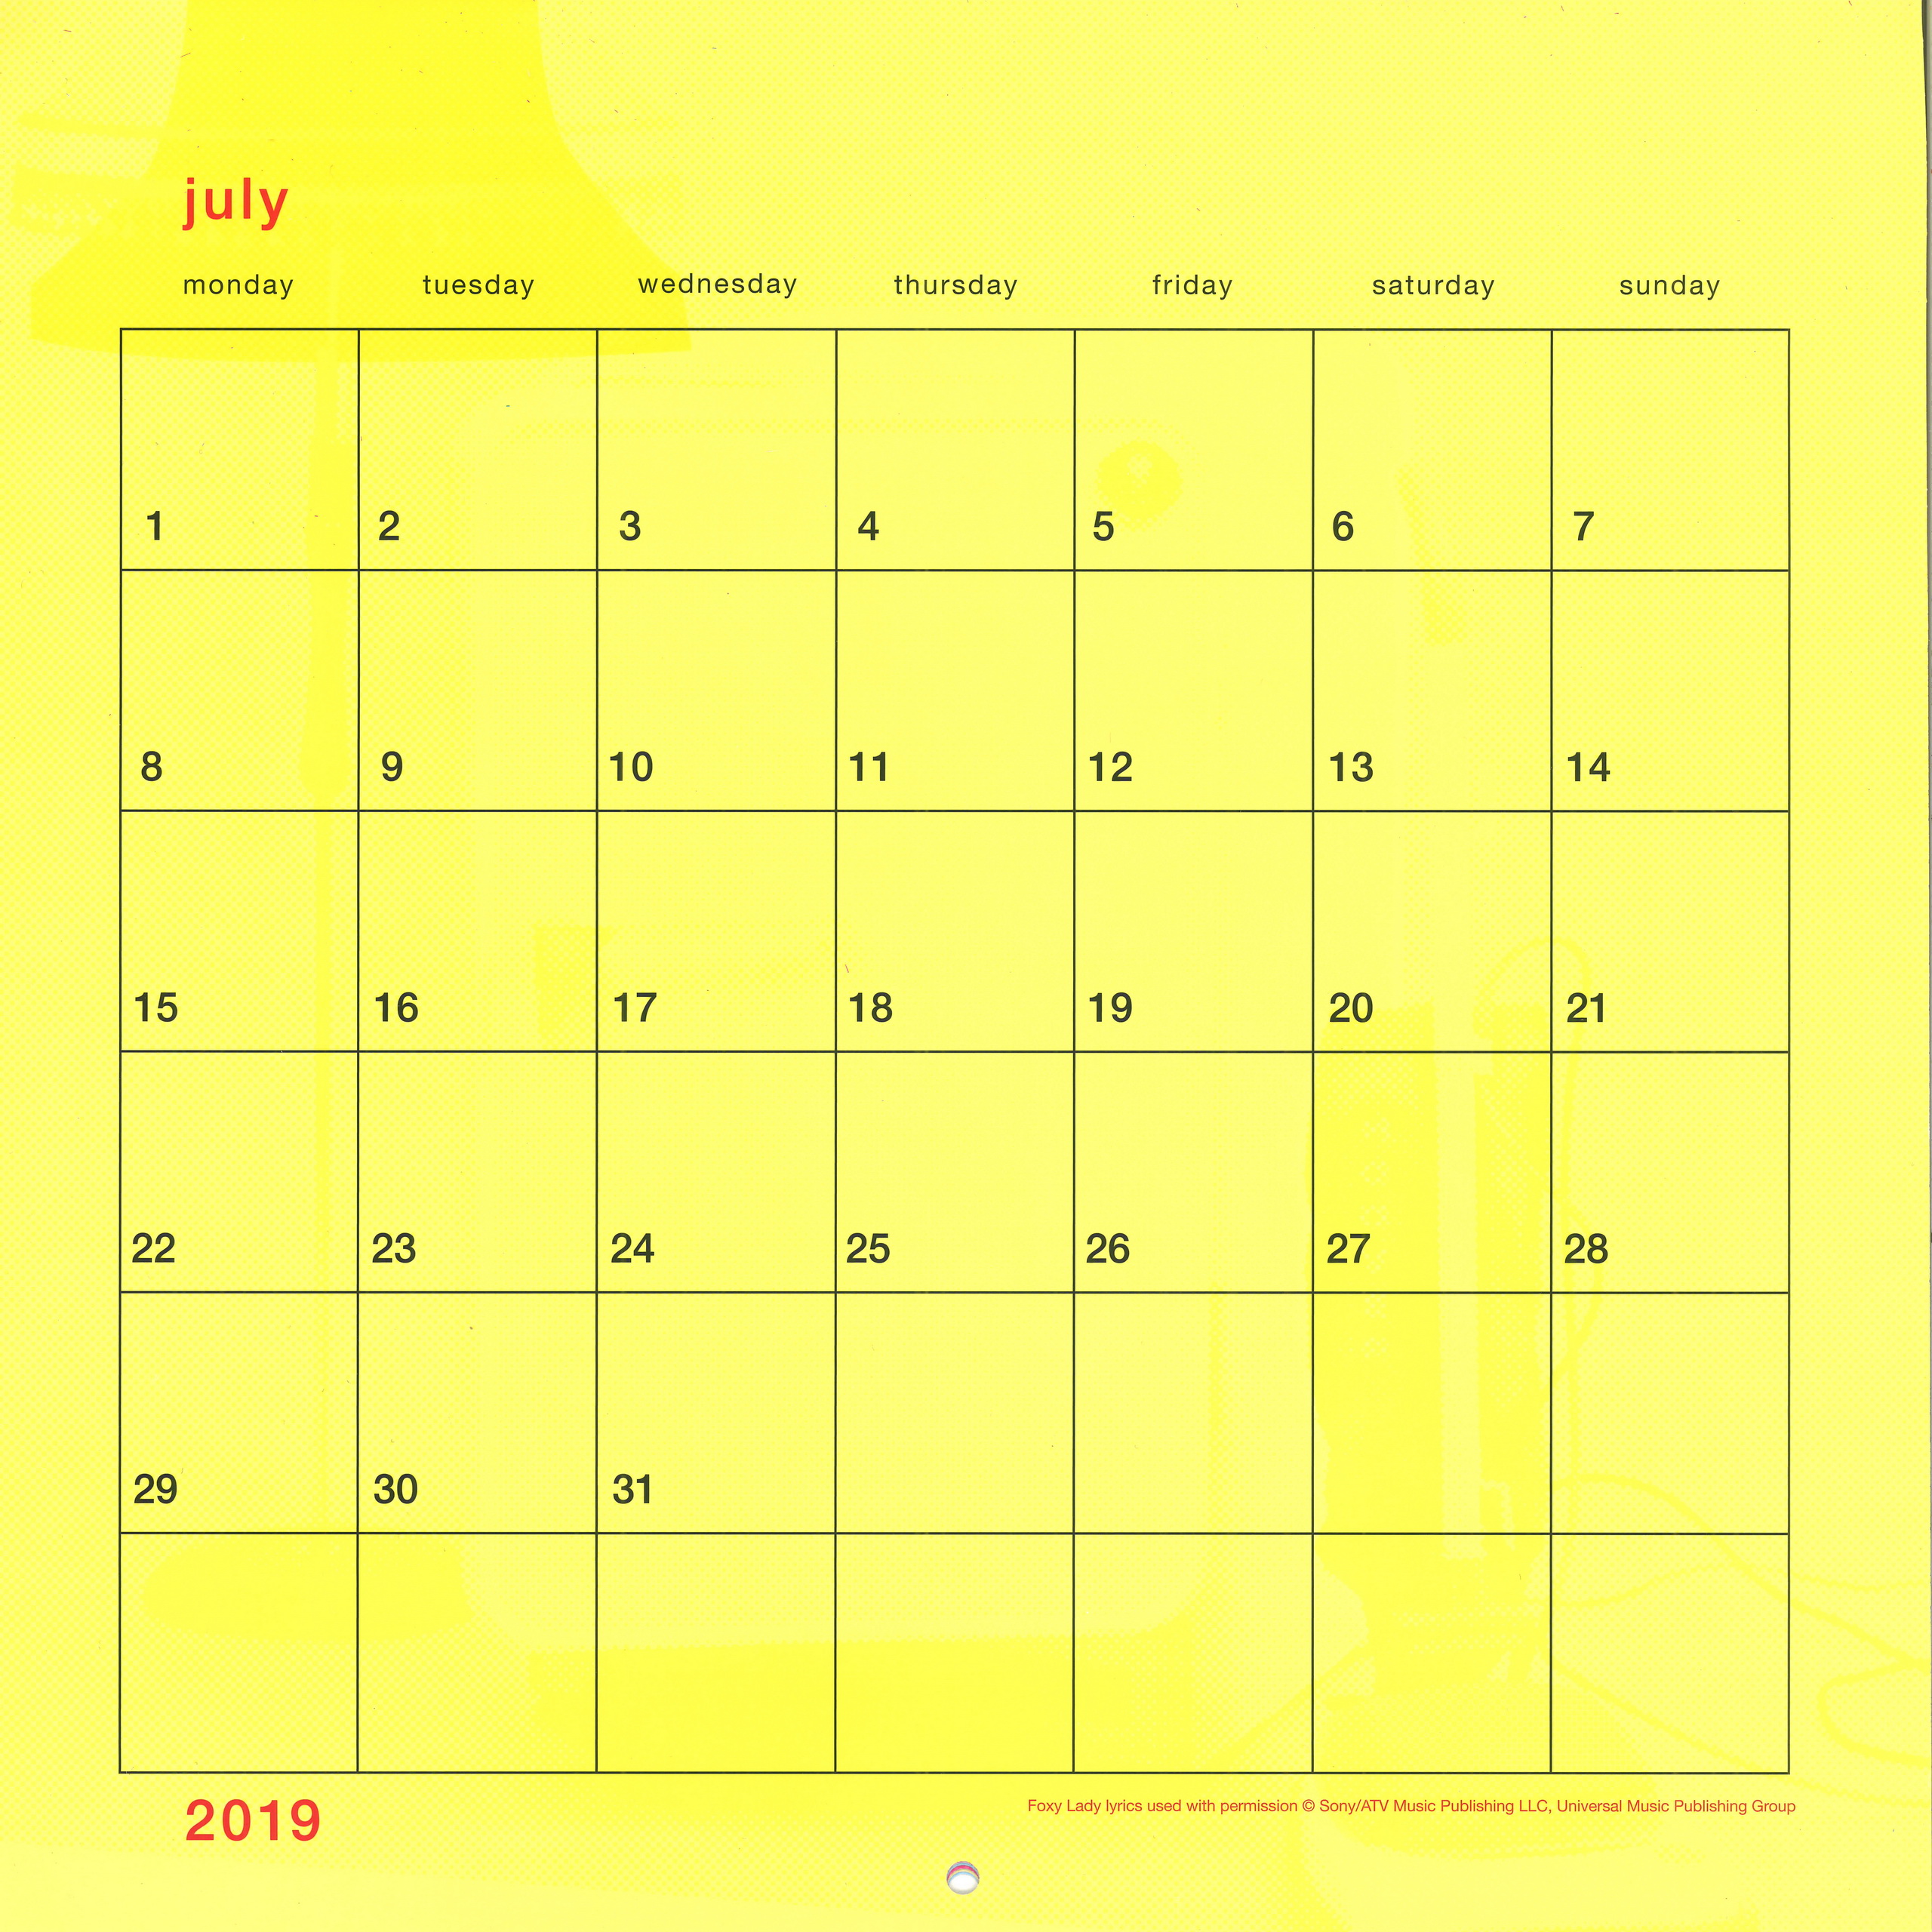 20190101-calendar-official-uk-007b